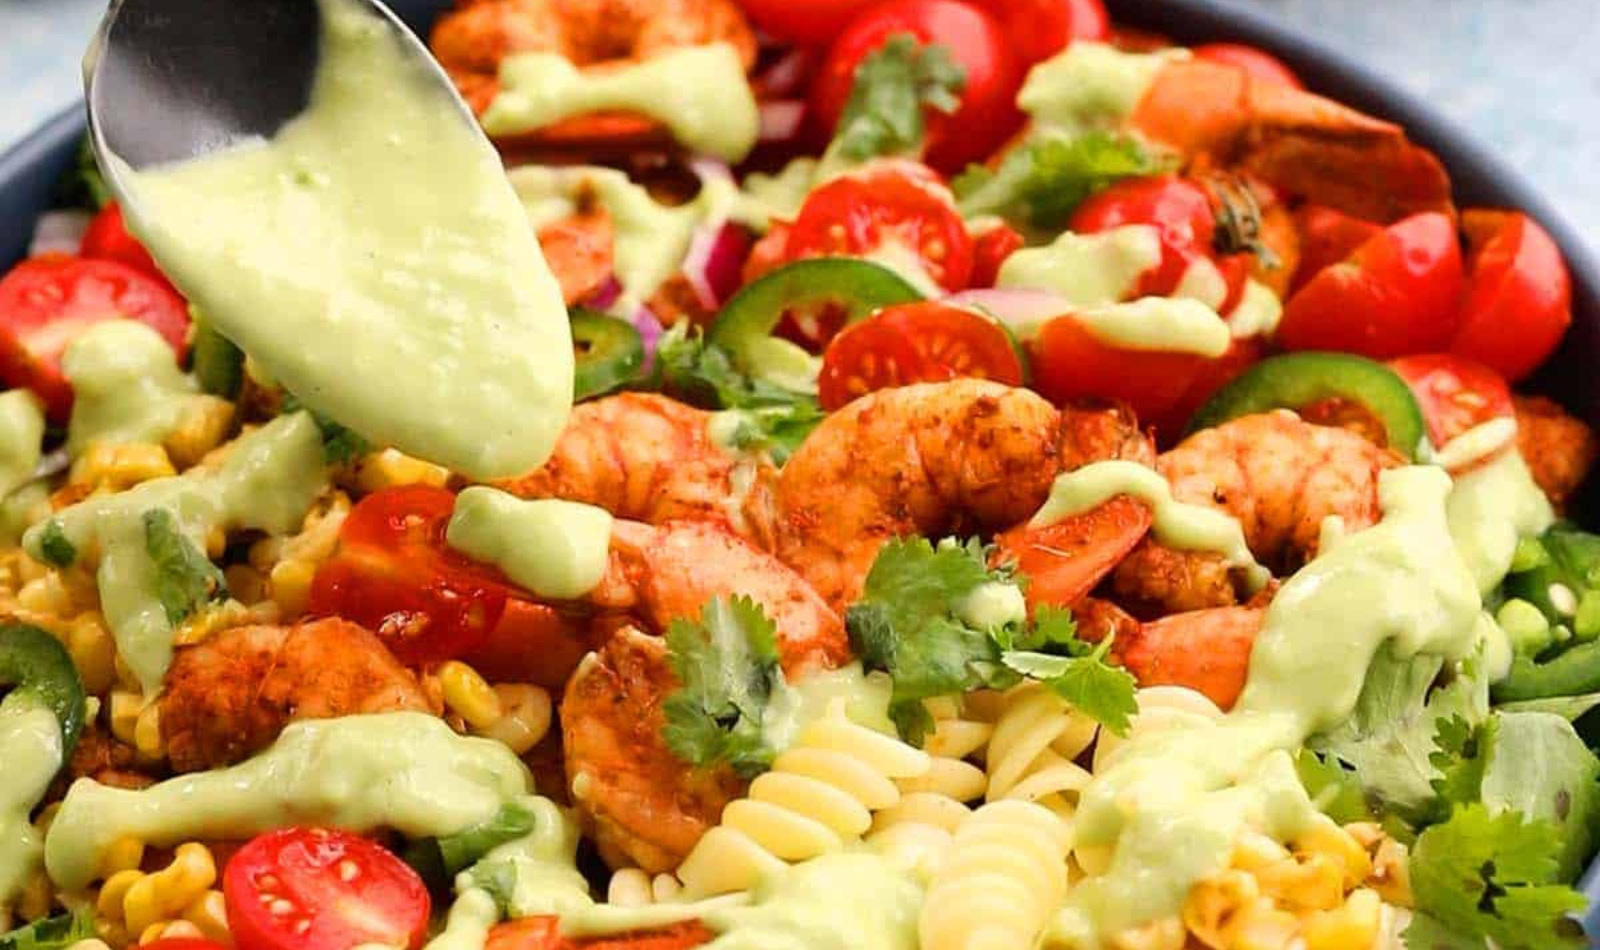 a shrimp pasta salad with avocado dressing